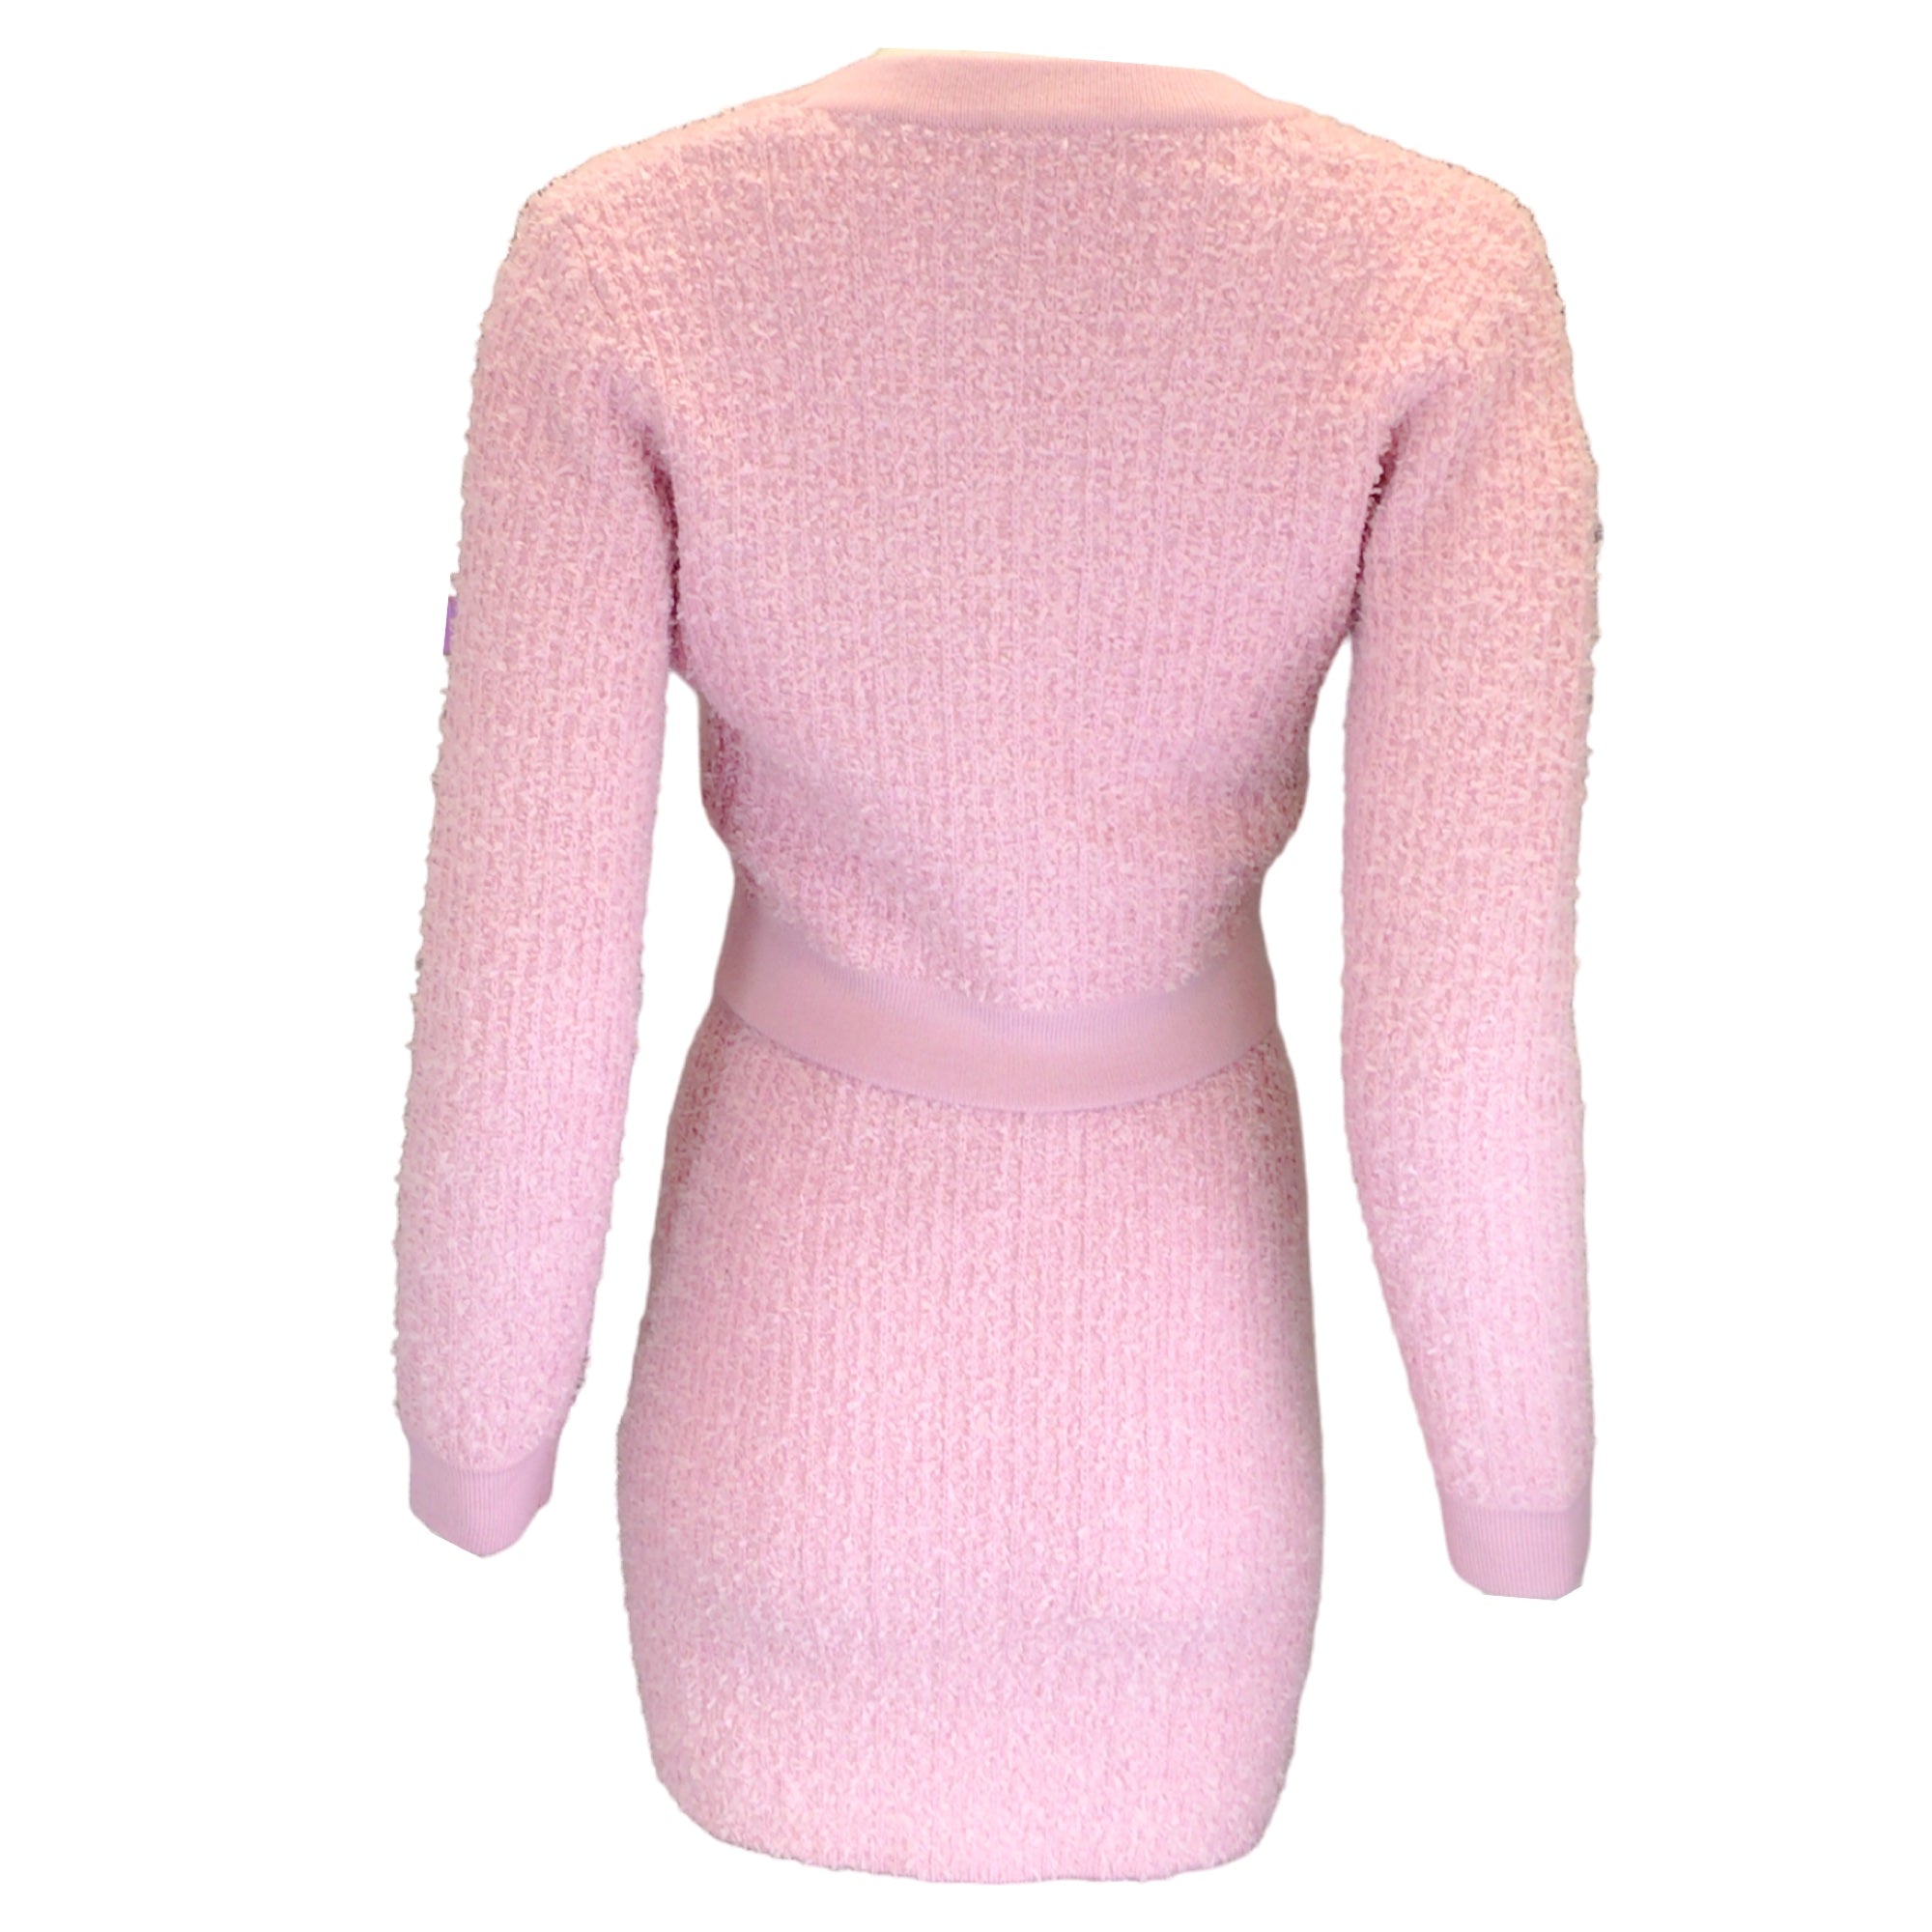 Elisabetta Franchi Soft Berry Jacquard Knit Skirt Suit